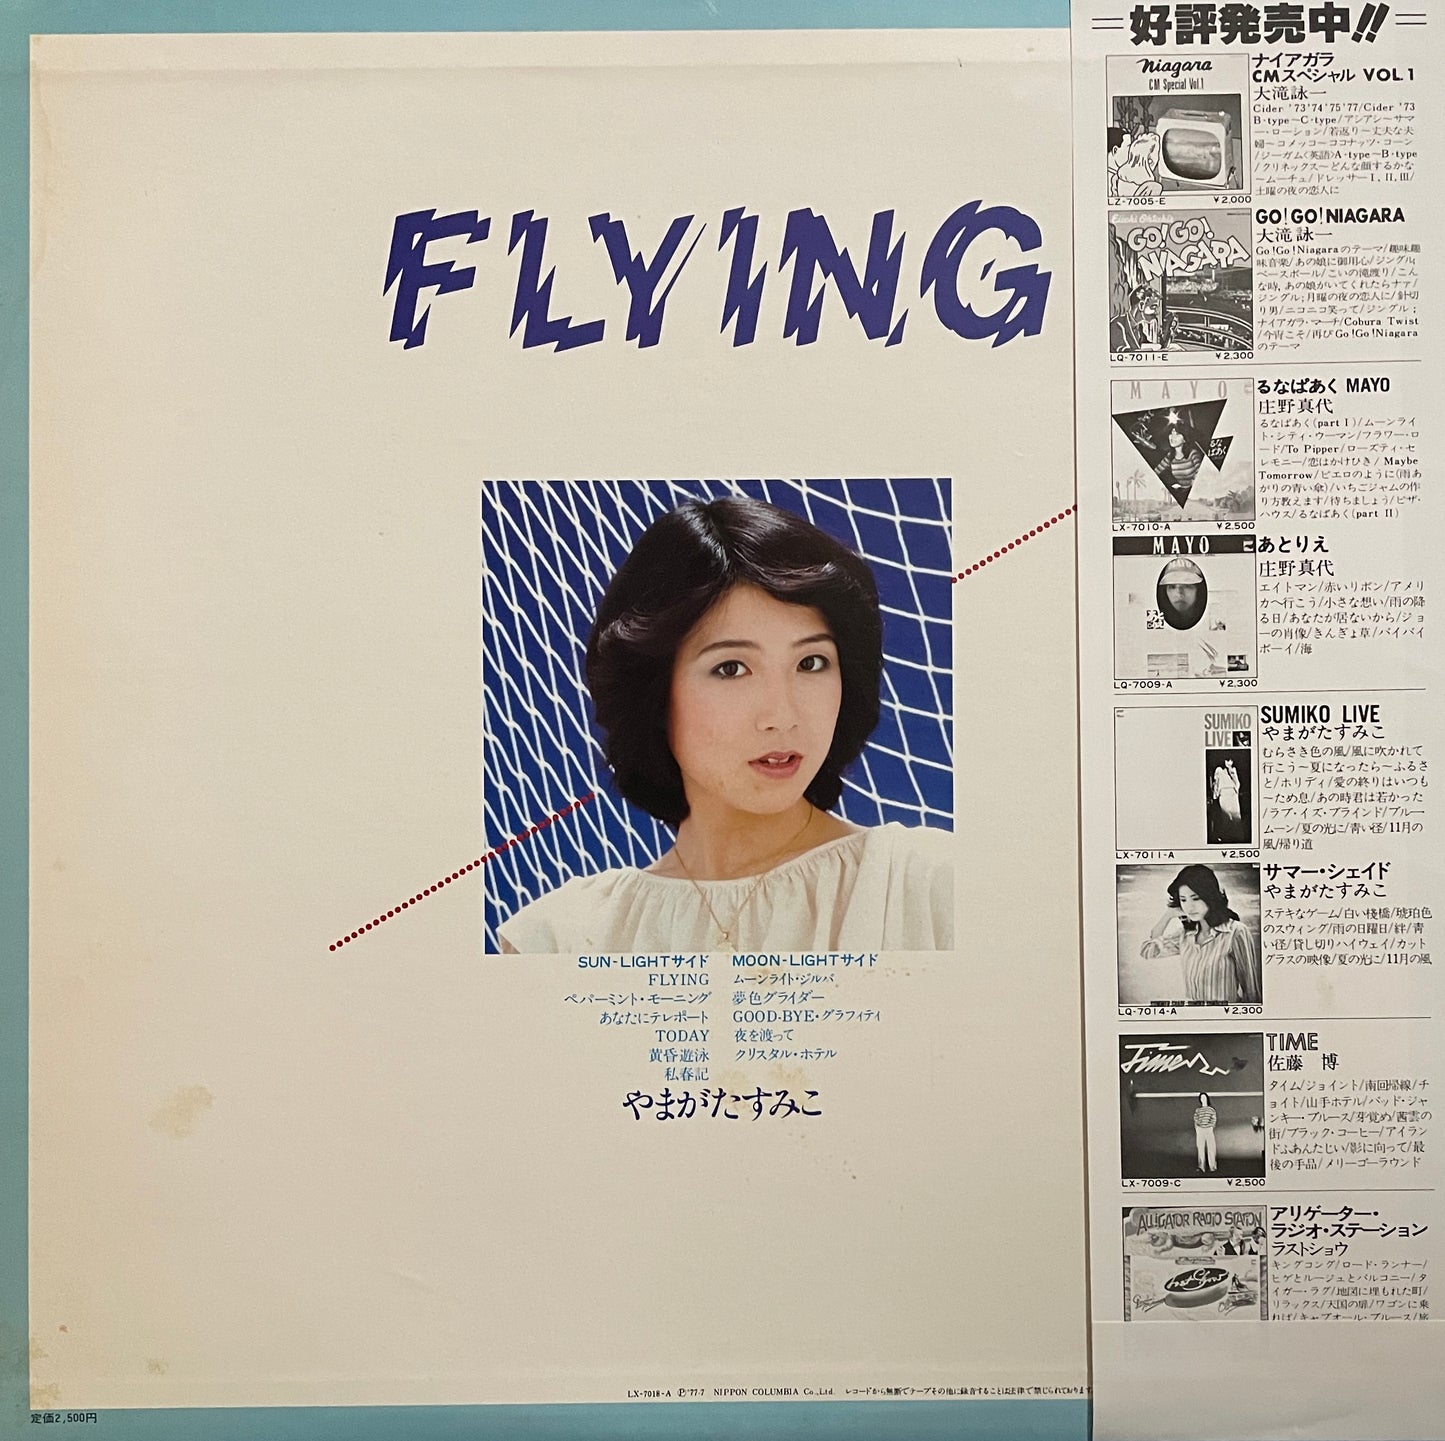 Sumiko Yamagata "Flying" (1977)